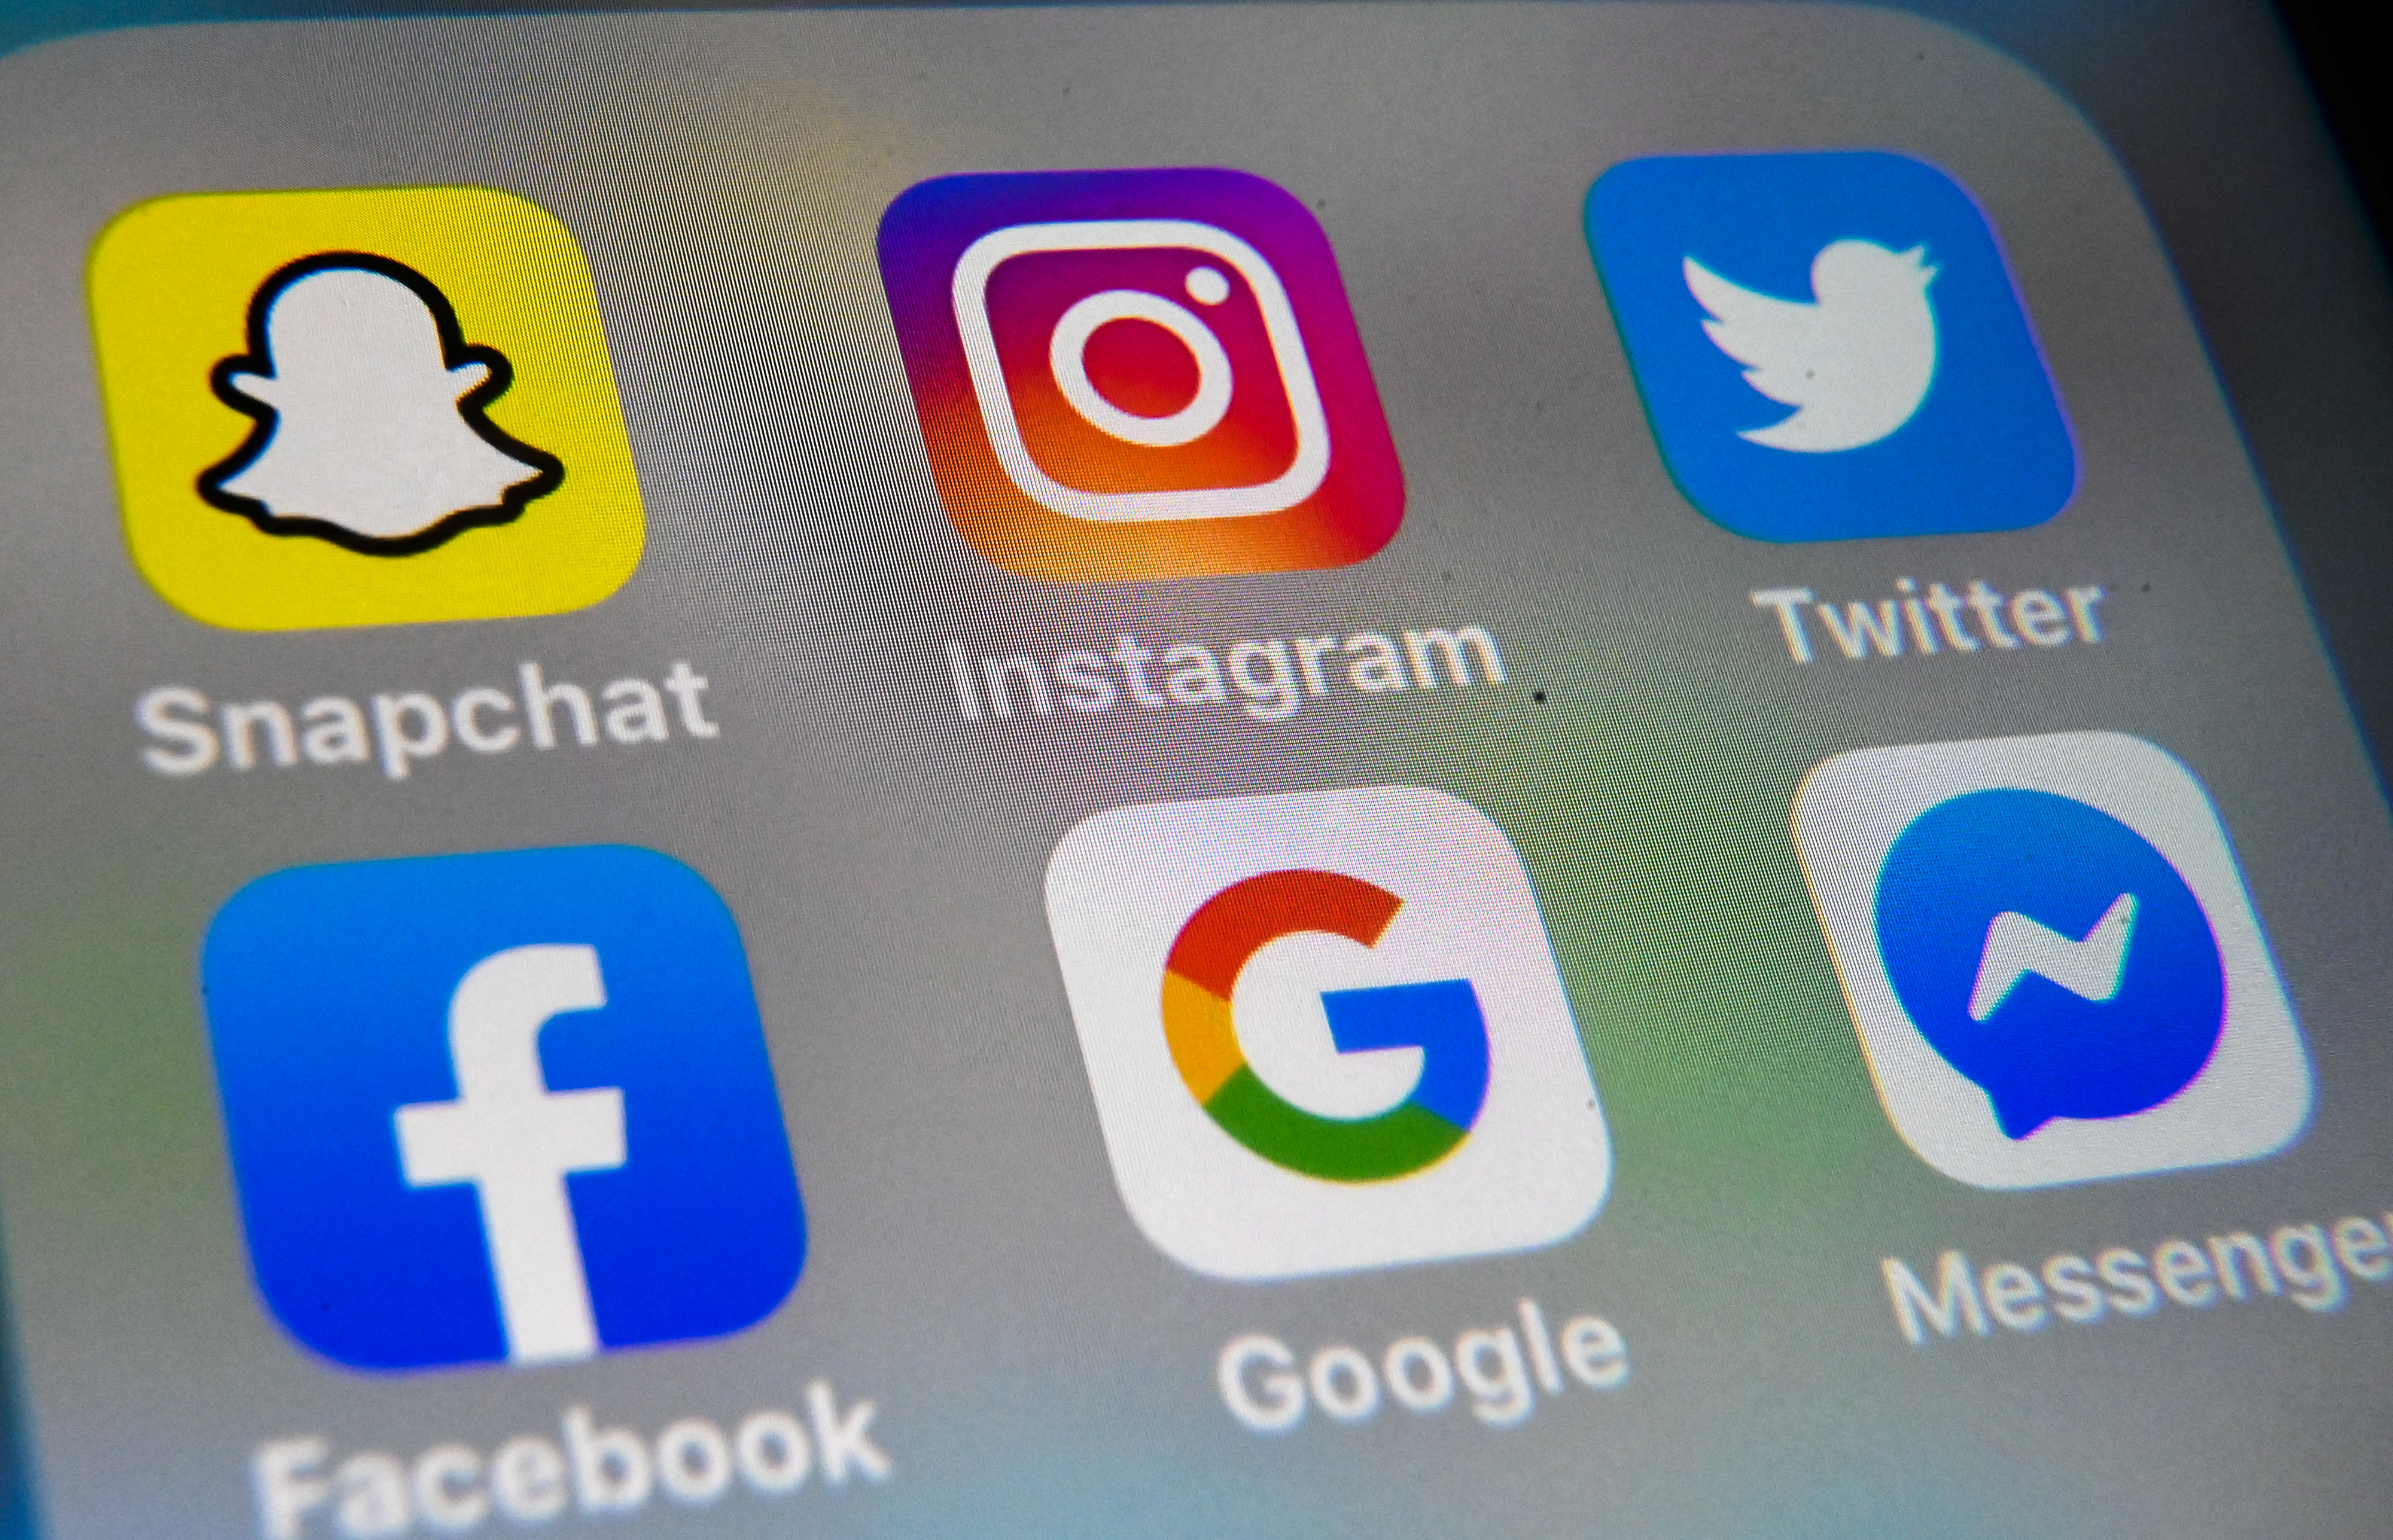 Mettre en avant une photo Instagram ou une publication Facebook expose désormais un utilisateur de Twitter à une suspension de son compte. AFP/Denis Charlet